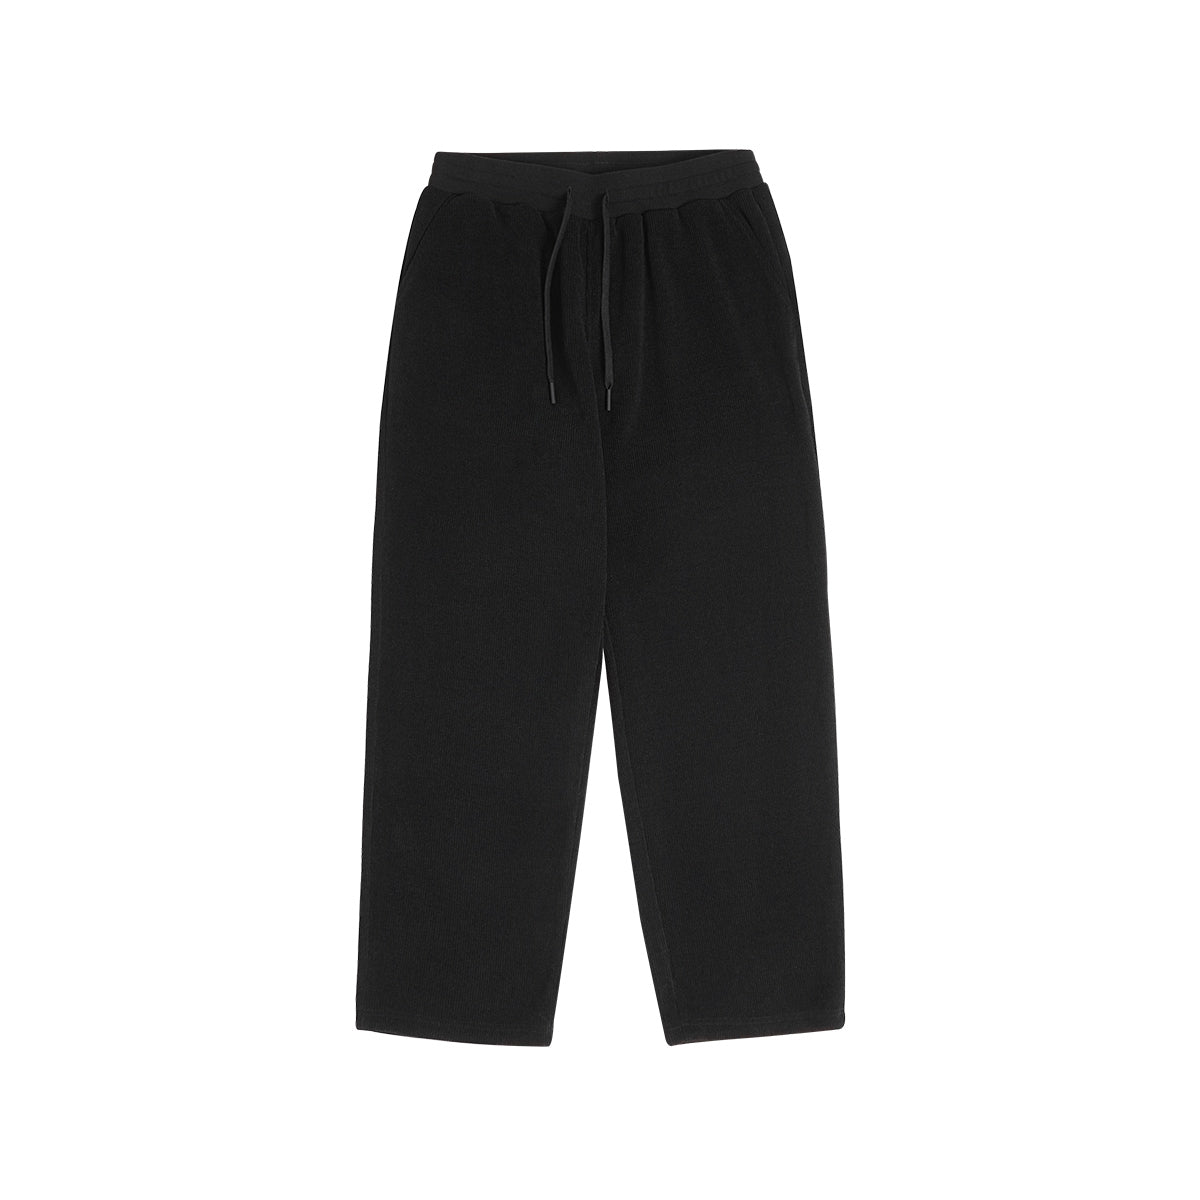 Baggy Fit Drape Black Corduroy Pants - 0cm